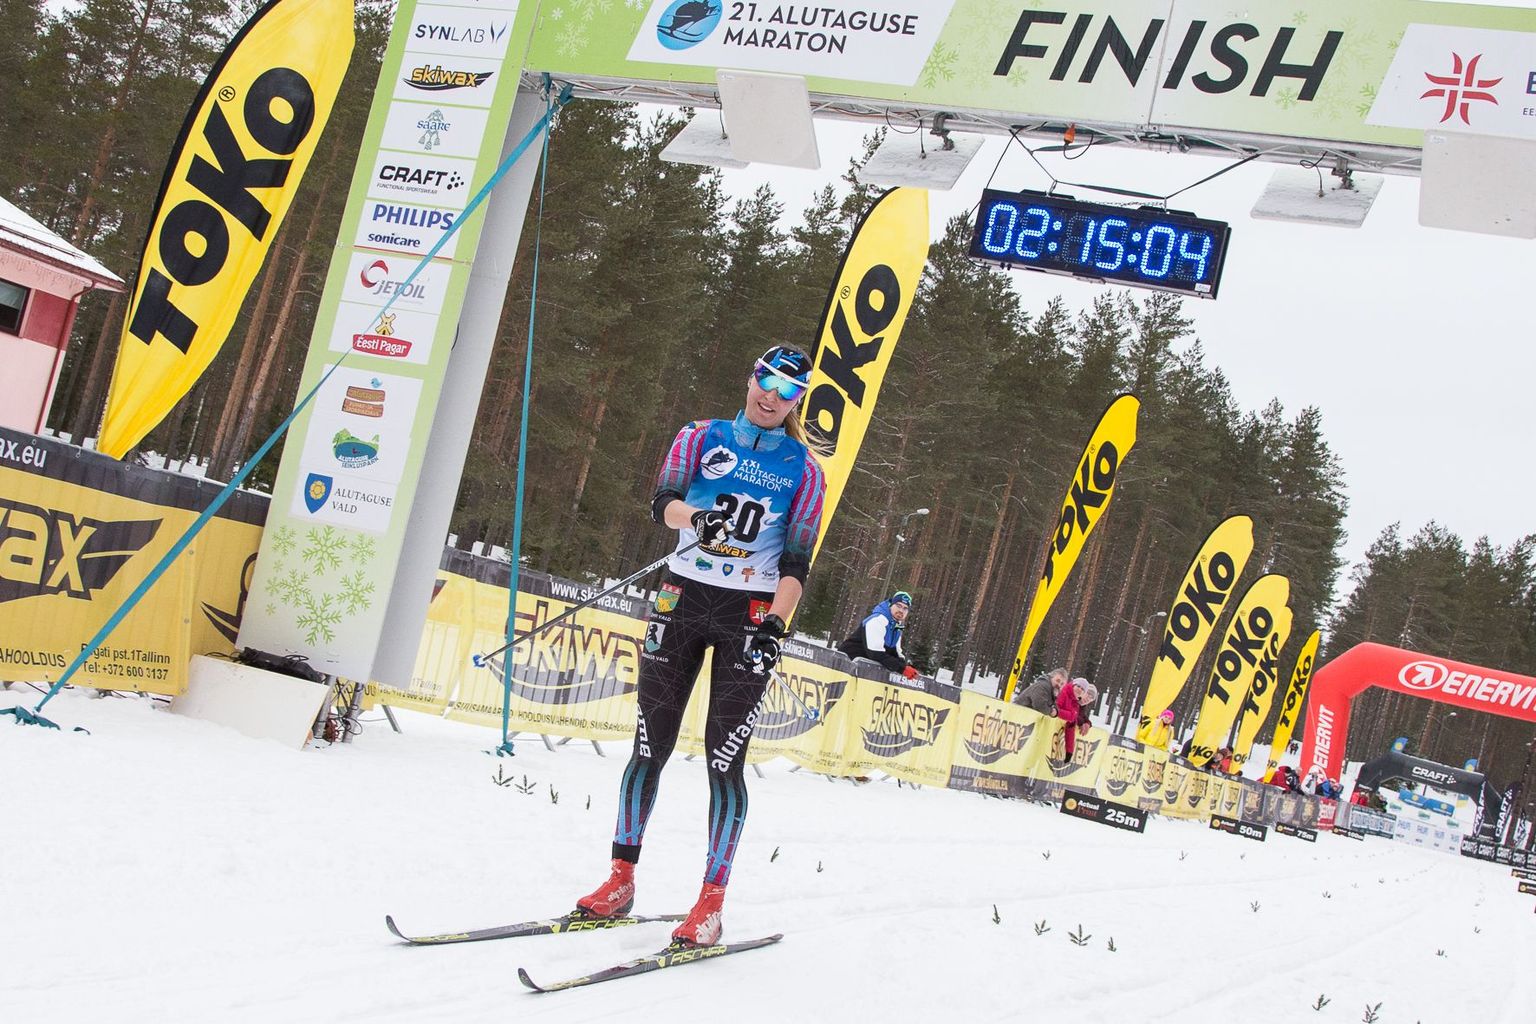 На этом снимке Авели Уусталу запечатлена на финише нынешнего Алутагузеского марафона, где она одержала победу. 24 марта там же, на лыжных трассах в Паннъярве, ей предстоит участие во взрослом чемпионате Эстонии в гонке на 30 километров, где предполагаемым фаворитом является Татьяна Маннима.